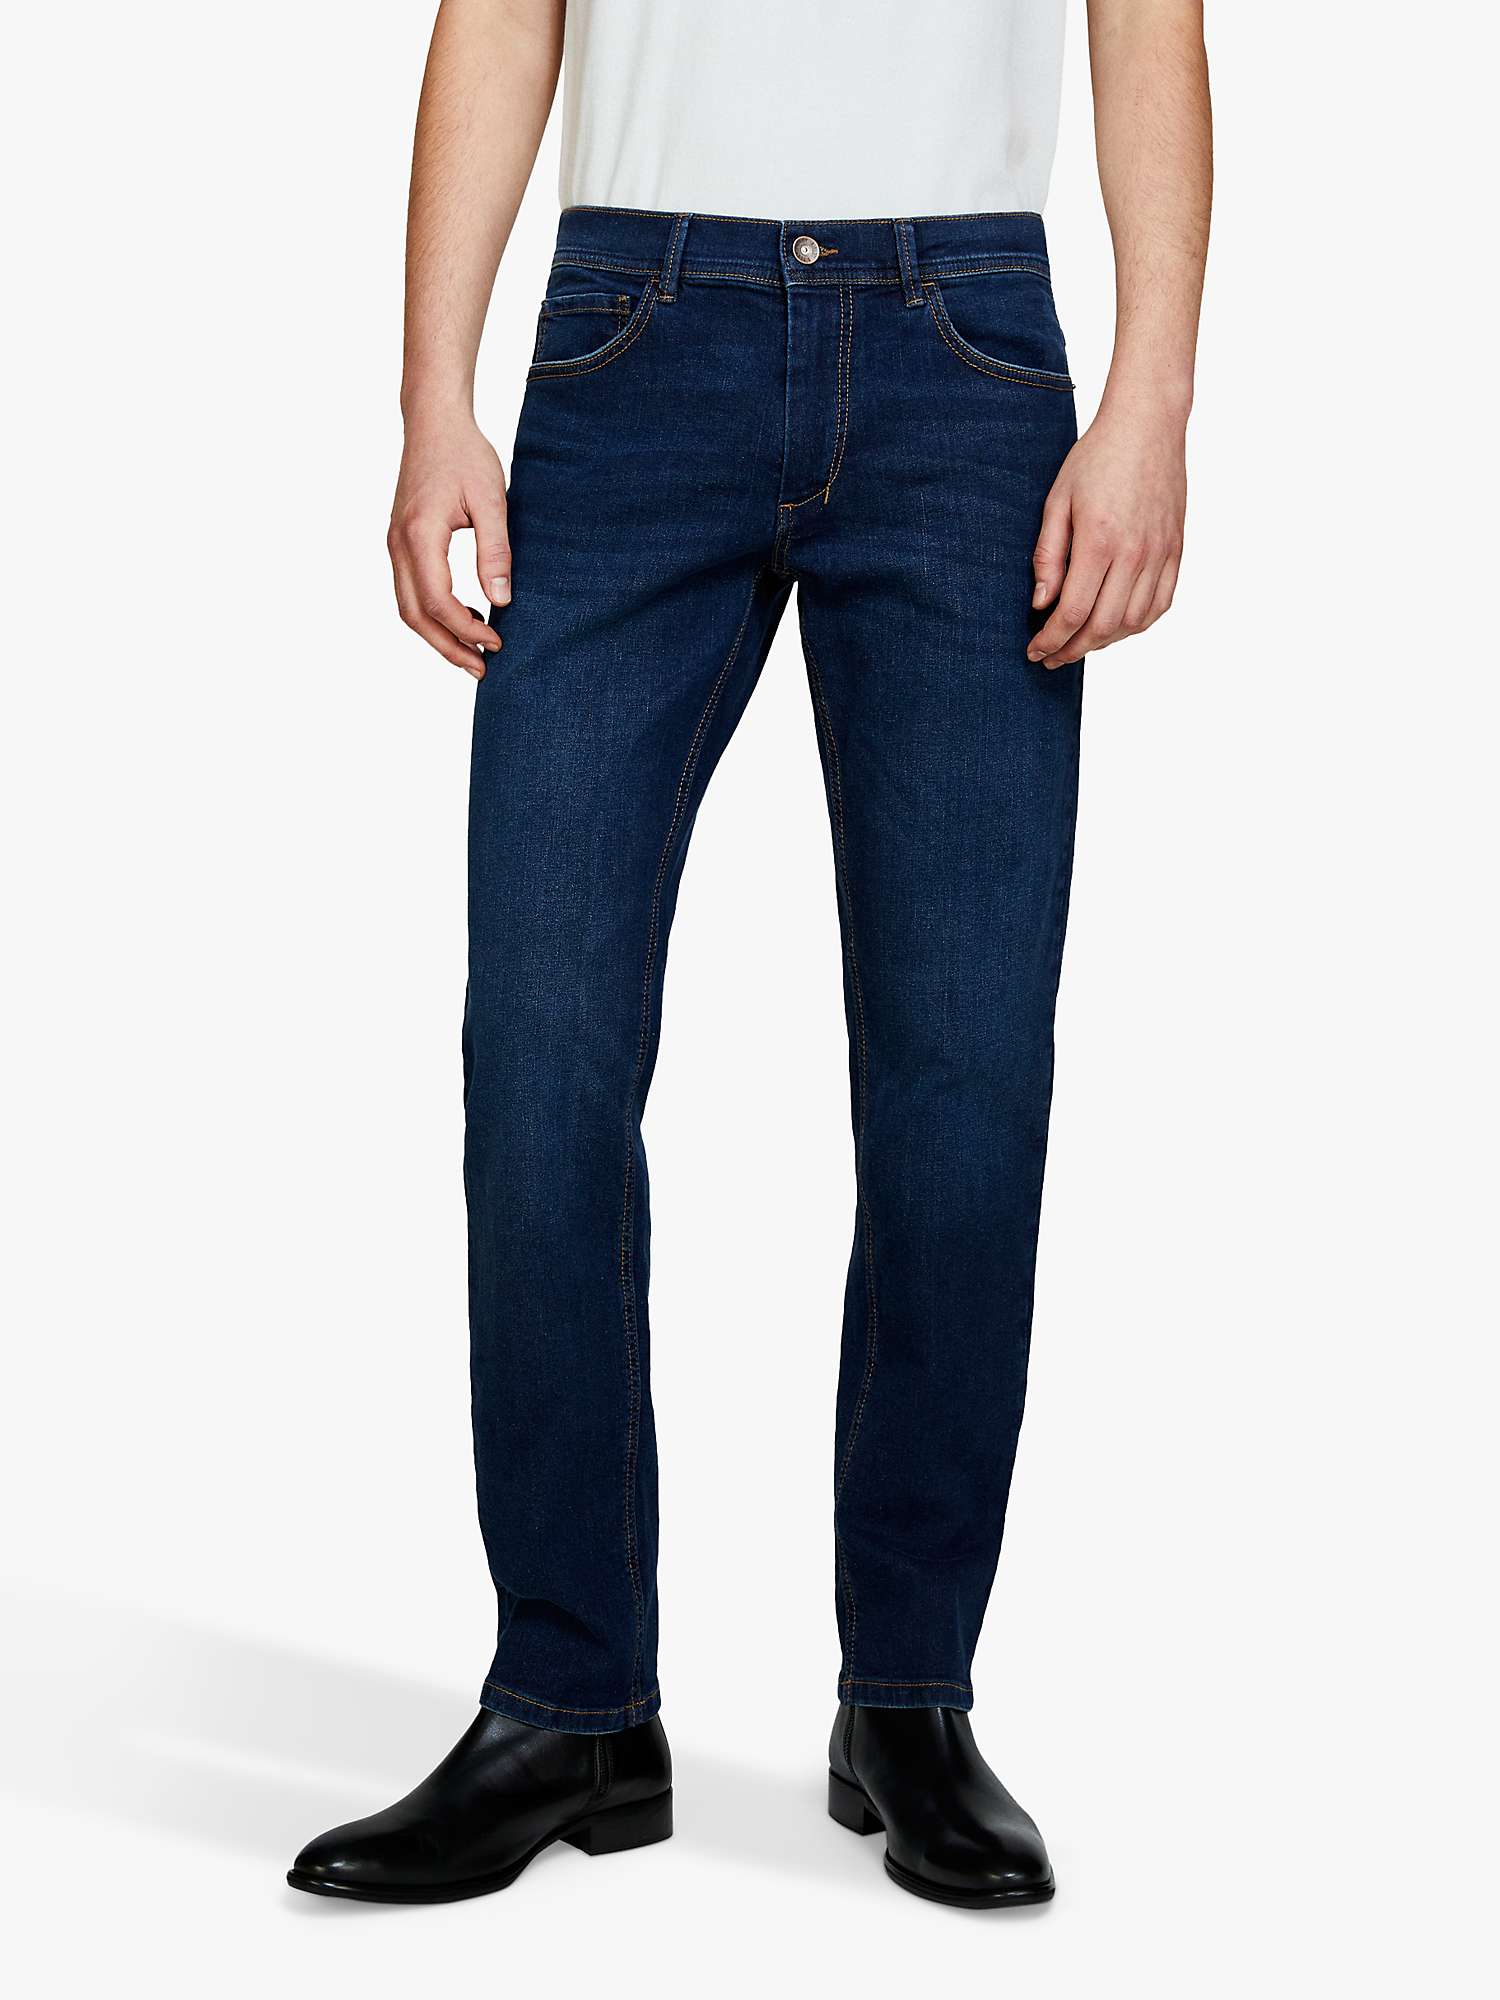 Buy SISLEY Stockholm Slim Fit Stretch Jeans, Blue Online at johnlewis.com